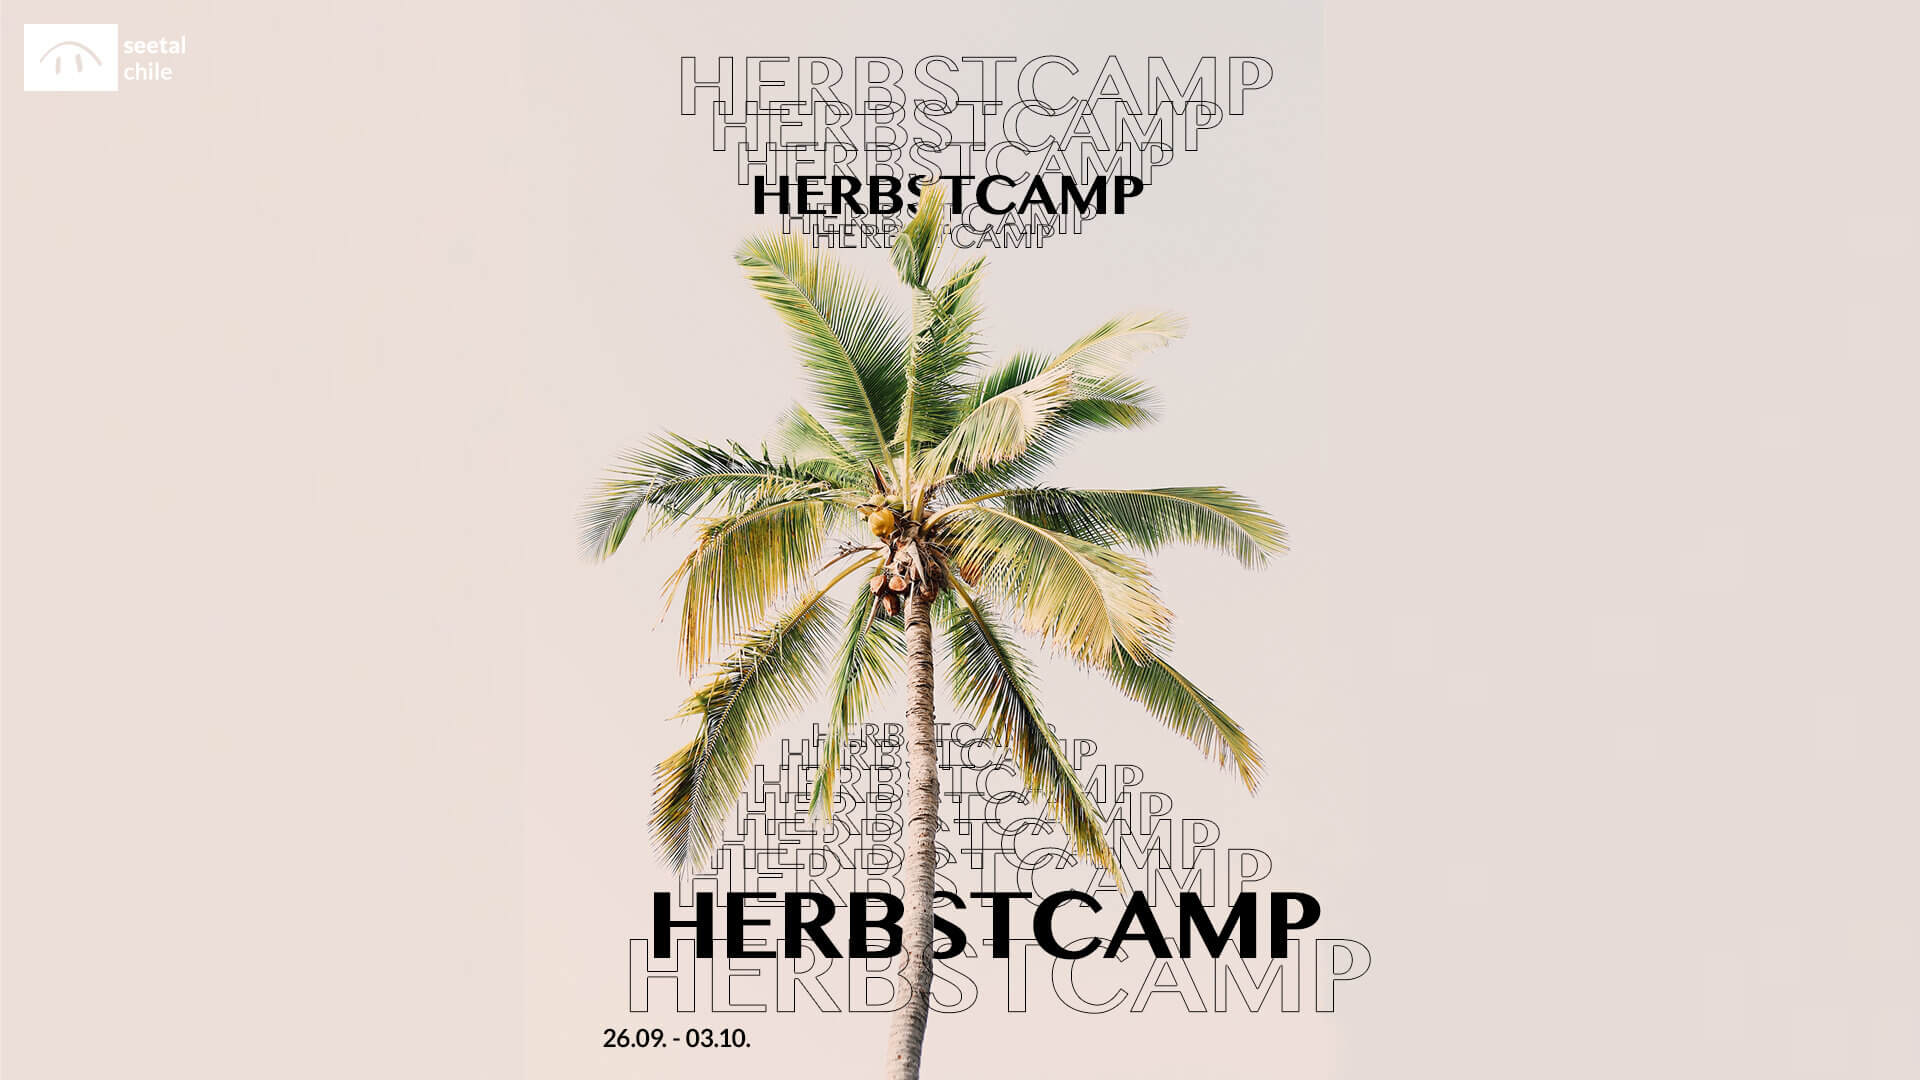 2020_05_18_herbstcamp-slider_blog-header